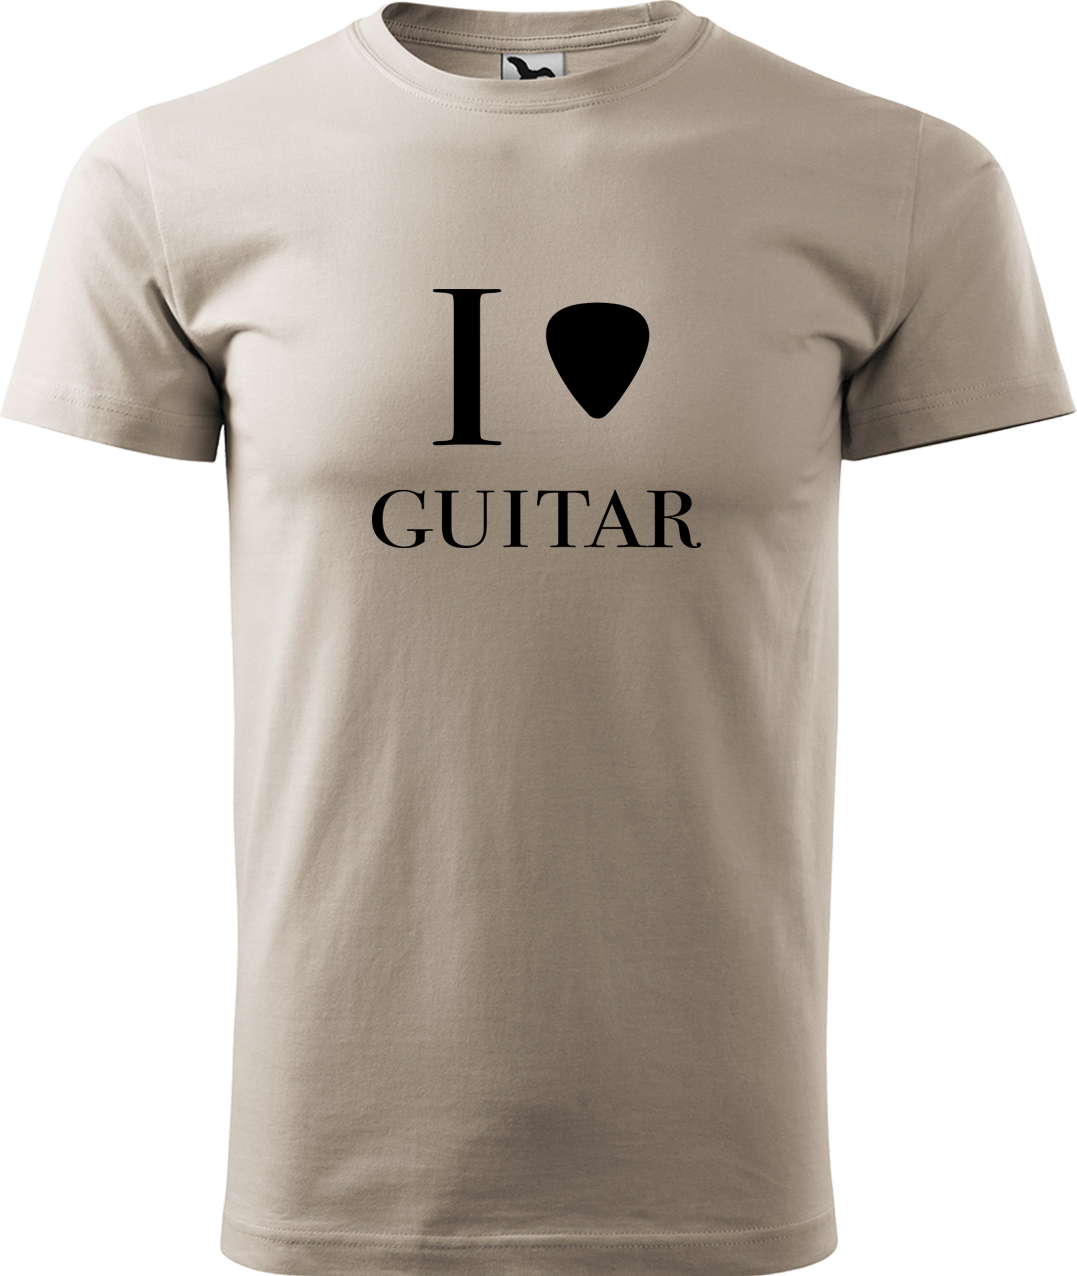 Pánské tričko s kytarou - I love guitar Velikost: M, Barva: Ledově šedá (51), Střih: pánský